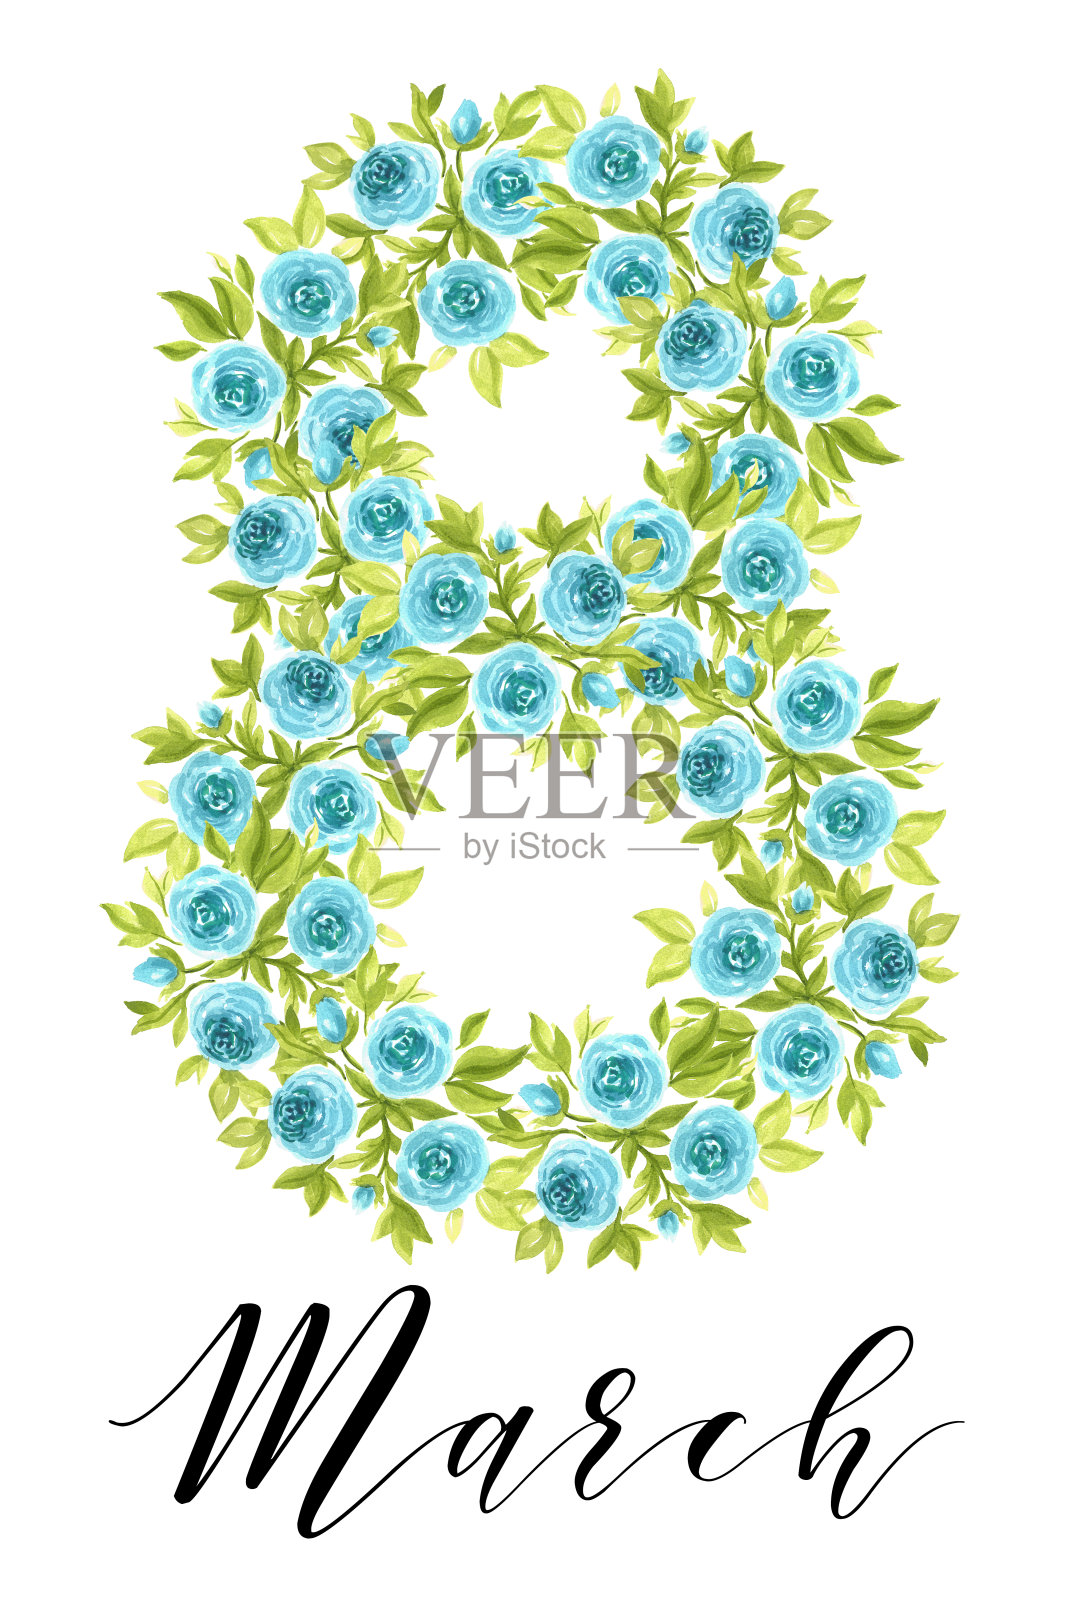 国际妇女节卡片设计。水彩蓝玫瑰和3月8日印刷插画图片素材